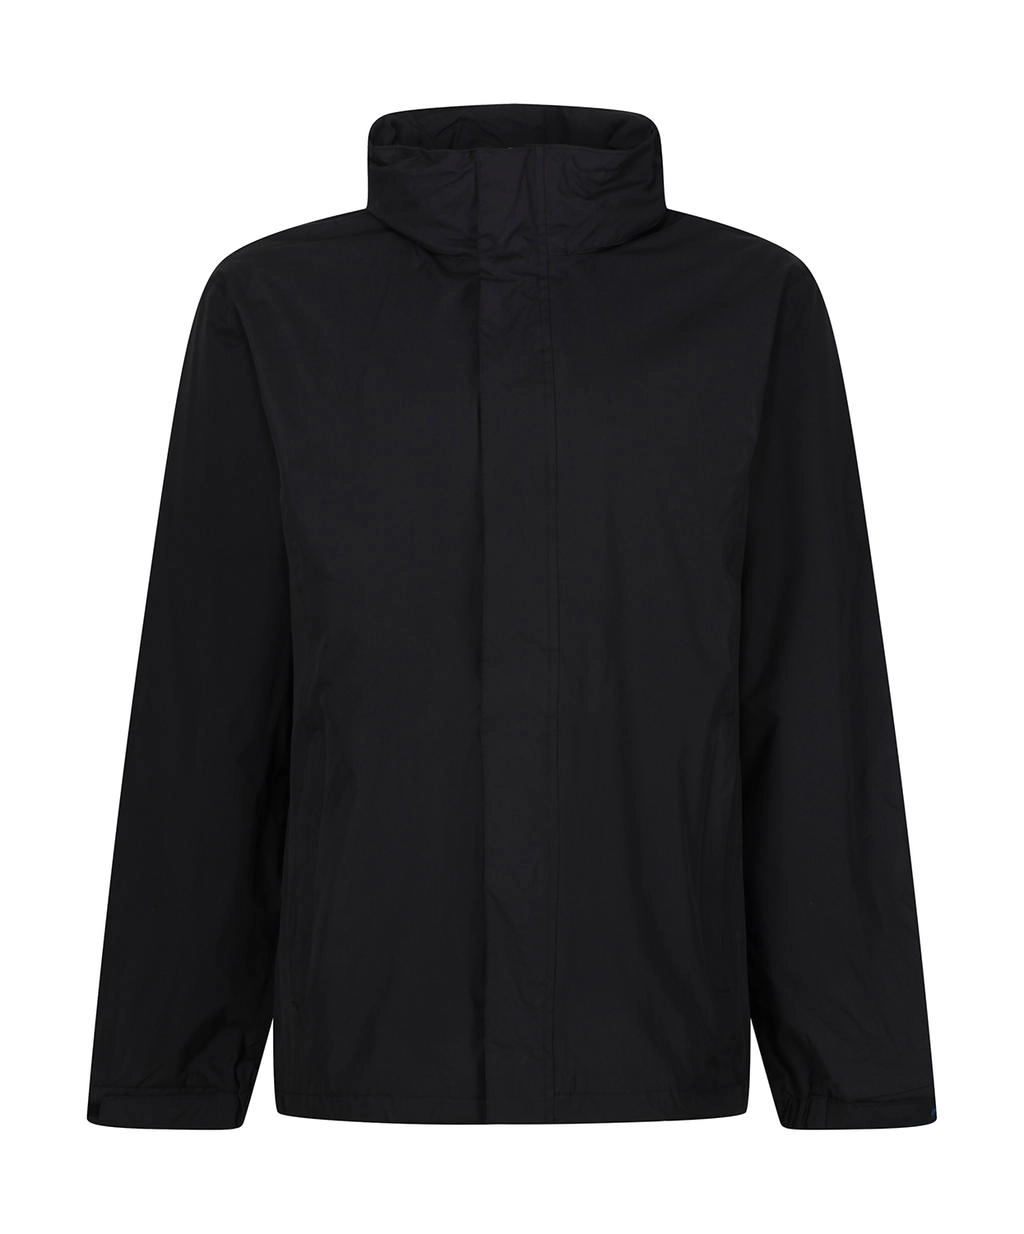 Ardmore Jacket zum Besticken und Bedrucken in der Farbe Black mit Ihren Logo, Schriftzug oder Motiv.